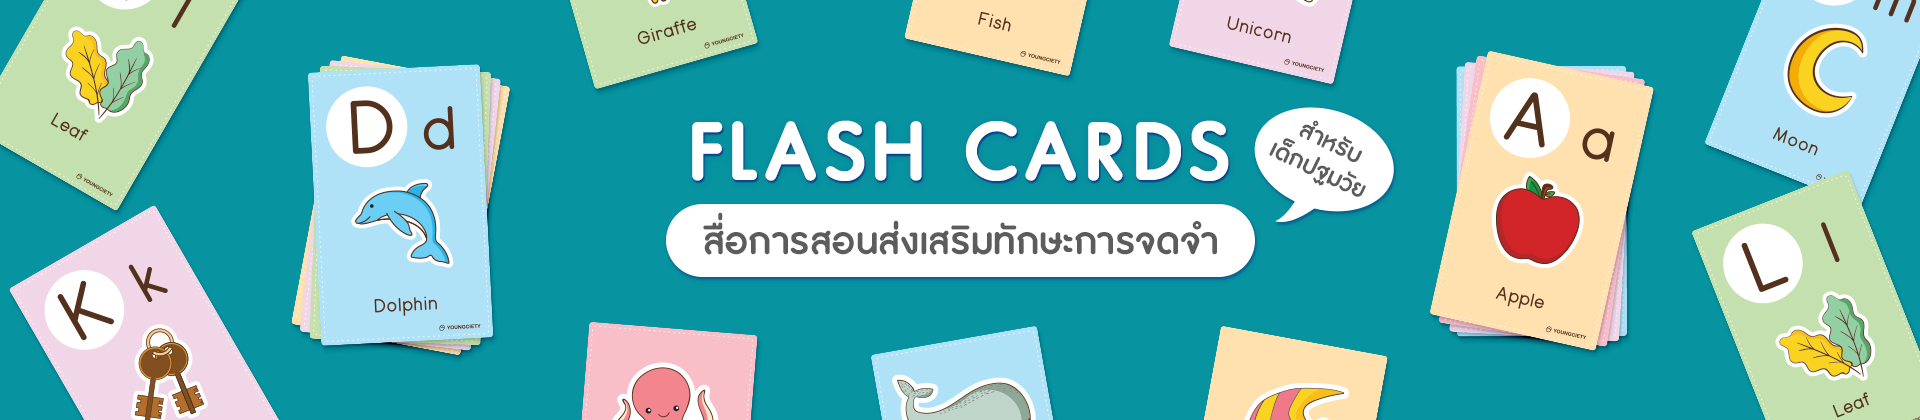 Flash Cards (บัตรคำ) สื่อการสอน ส่งเสริมทักษะการจดจำสำหรับเด็กปฐมวัย